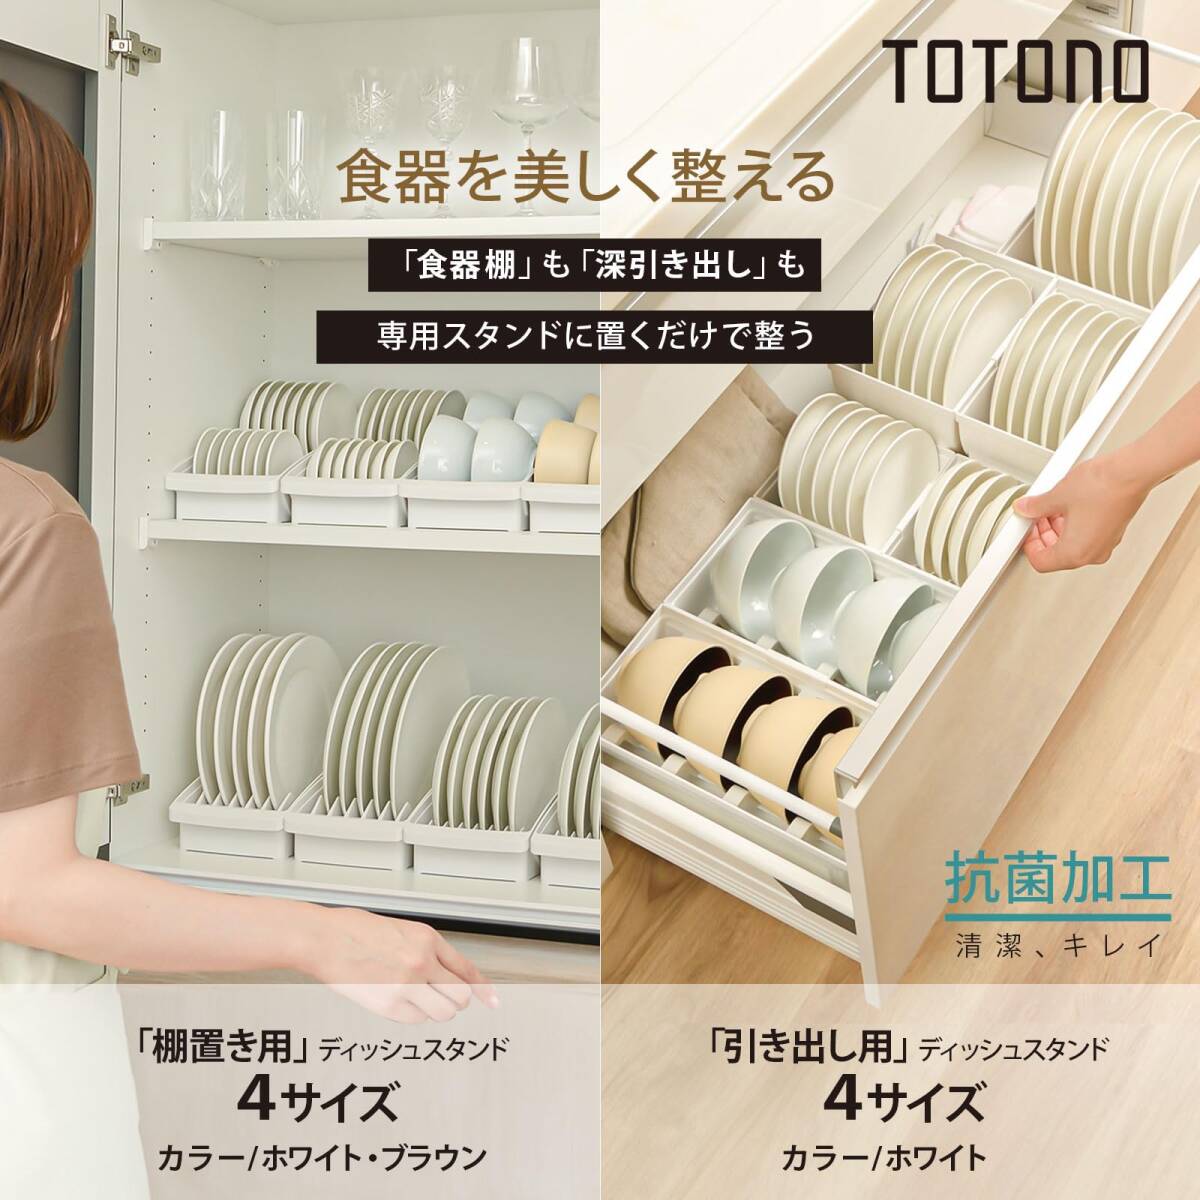 リッチェル キッチン収納 TOTONO(トトノ) 引き出し用 ディッシュスタンドR レギュラー ホワイト 日本製 食洗機対応 取っ手付き 使いや_画像2